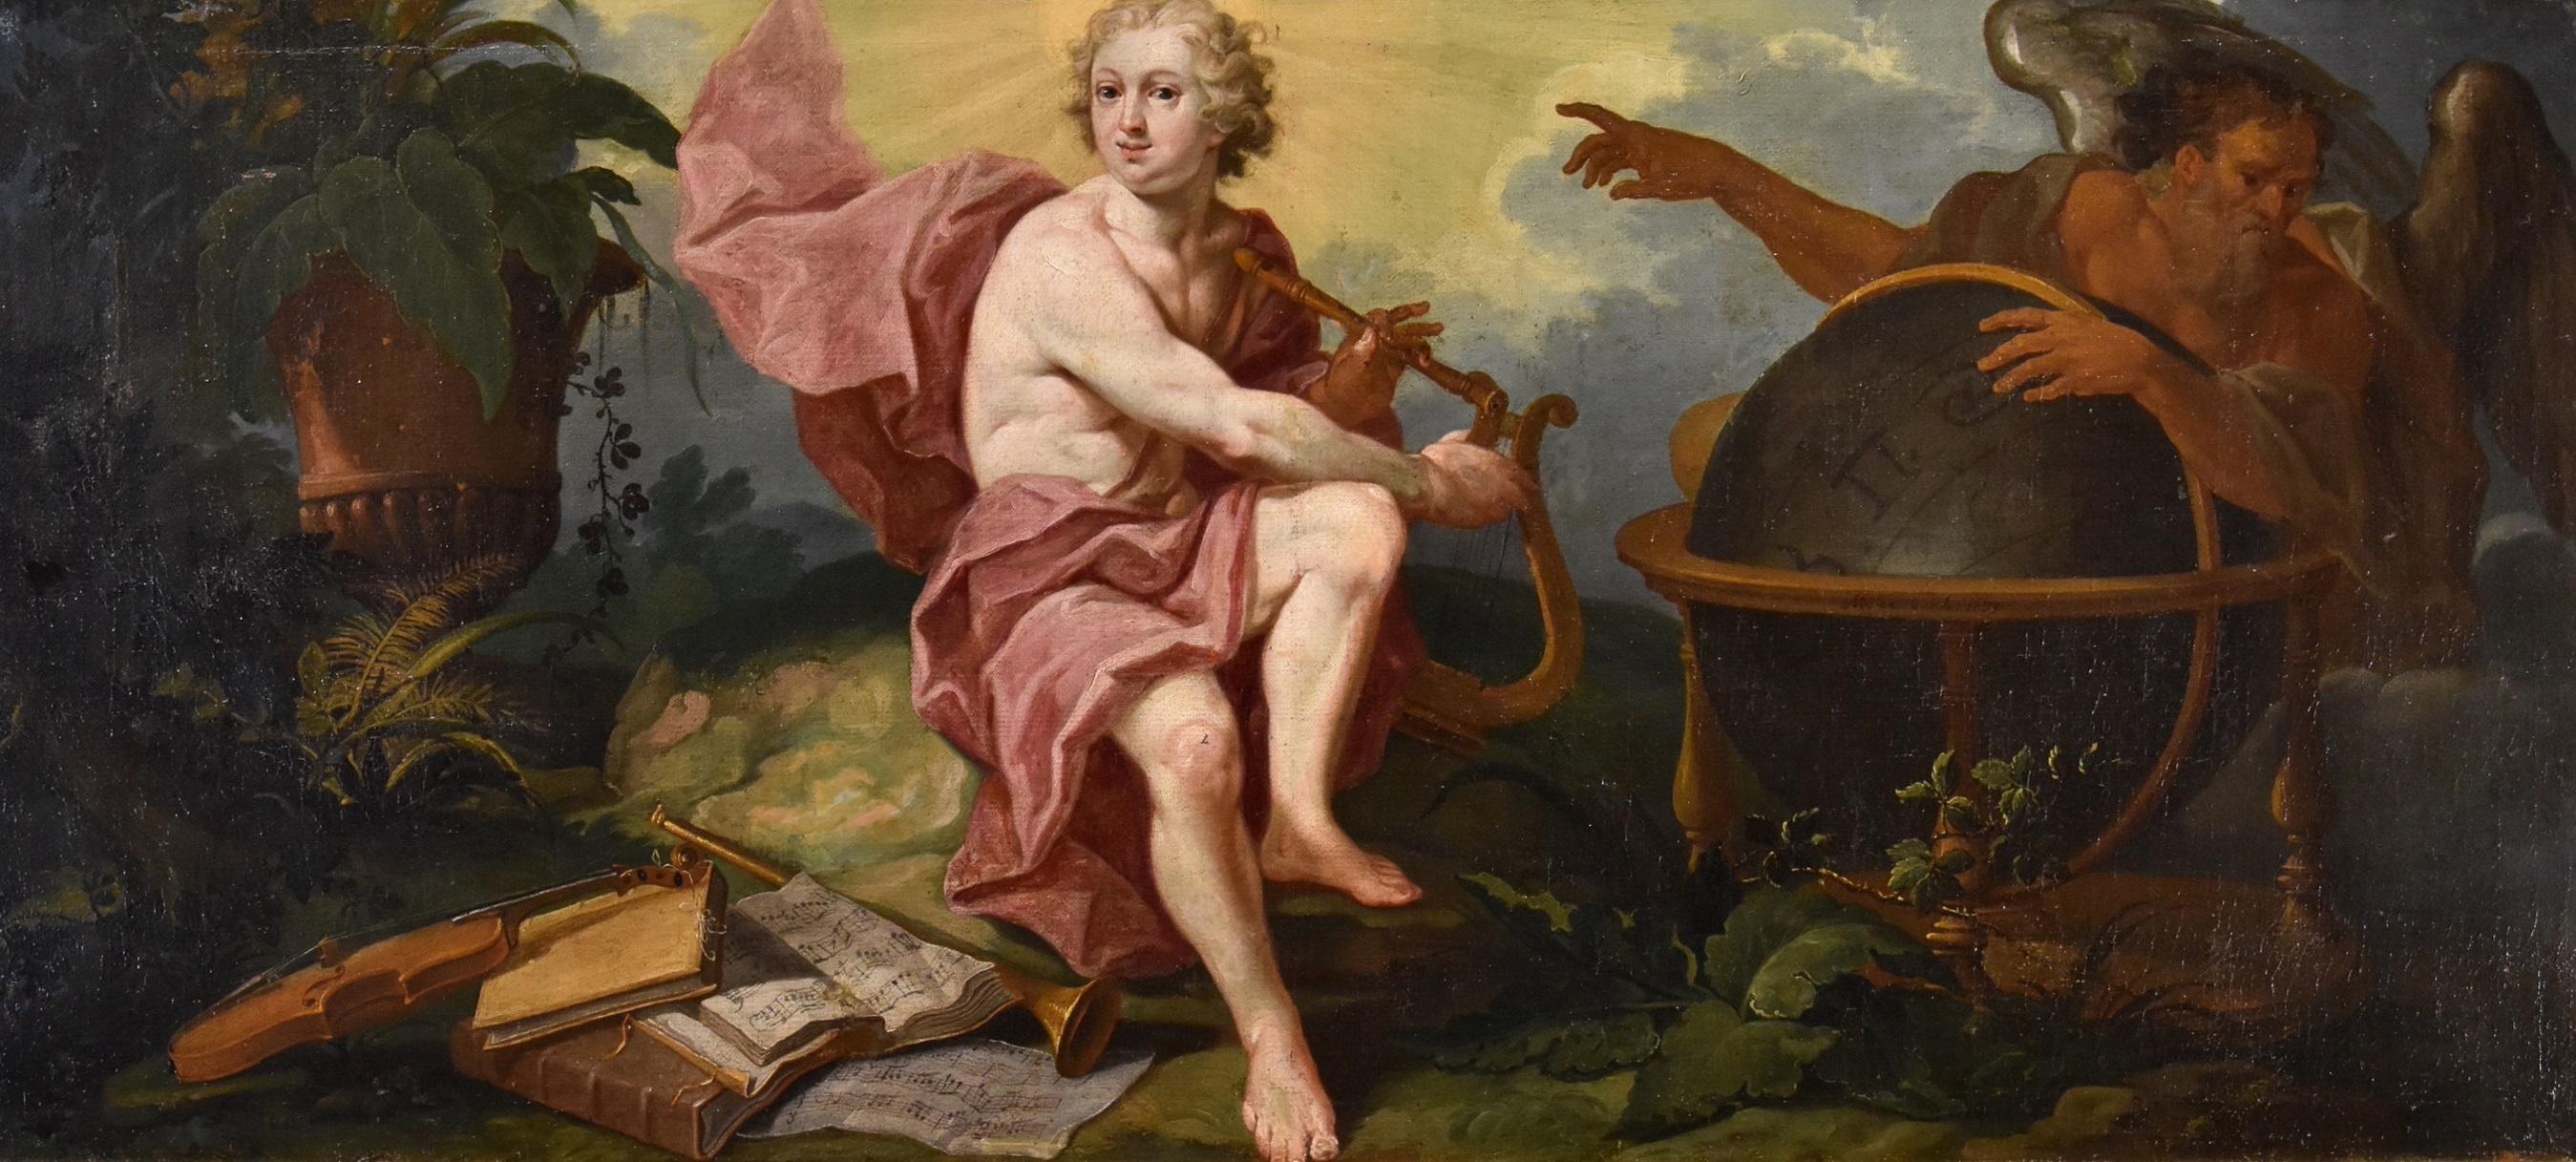 Allegory Triumph Of Art Over Time De Visch Gemälde 18. Jahrhundert Öl auf Leinwand Kunst  – Painting von Matthias De Visch (1701 - 1765) 